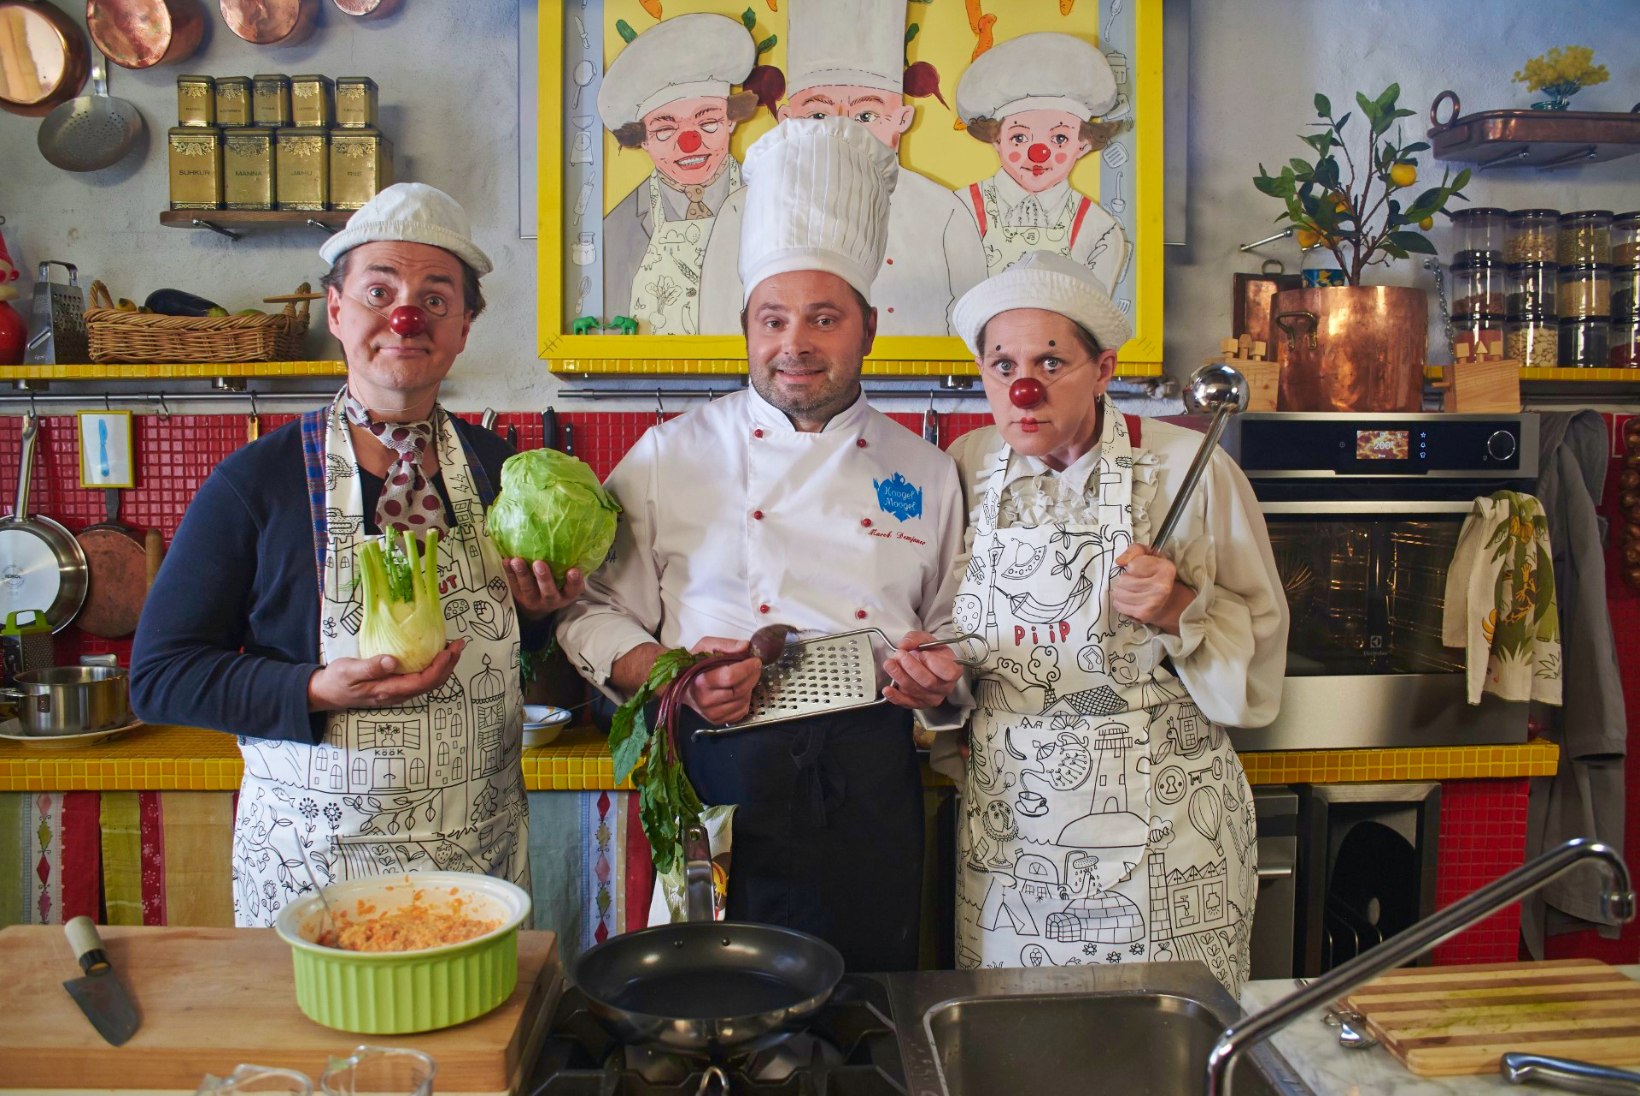 FOTOD | "Piip ja Tuut köögis" kutsub lapsi ja nende vanemaid kokkama!